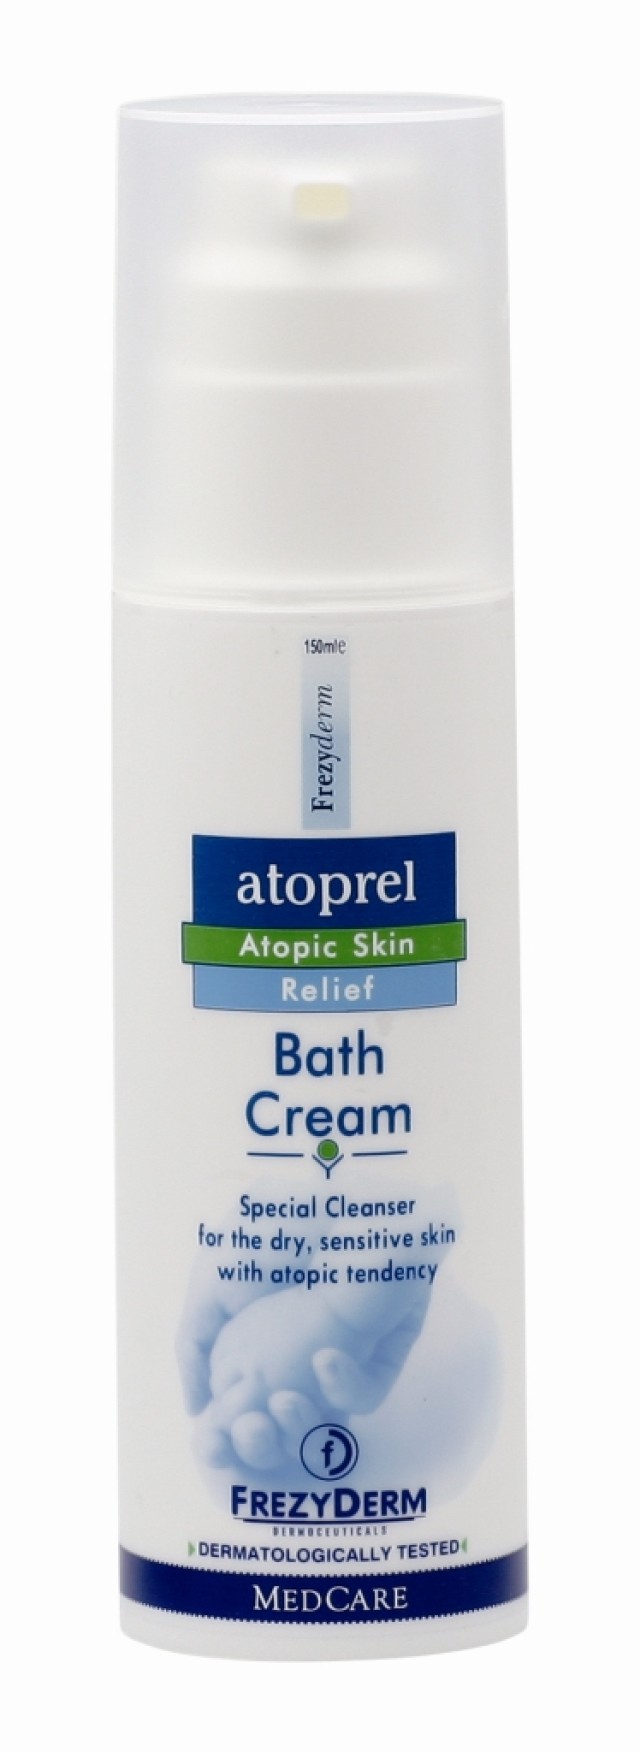 Frezyderm Atoprel Bath Cream Κρεμώδες Καθαριστικό για Ατοπική Δερματίτιδα 150ml